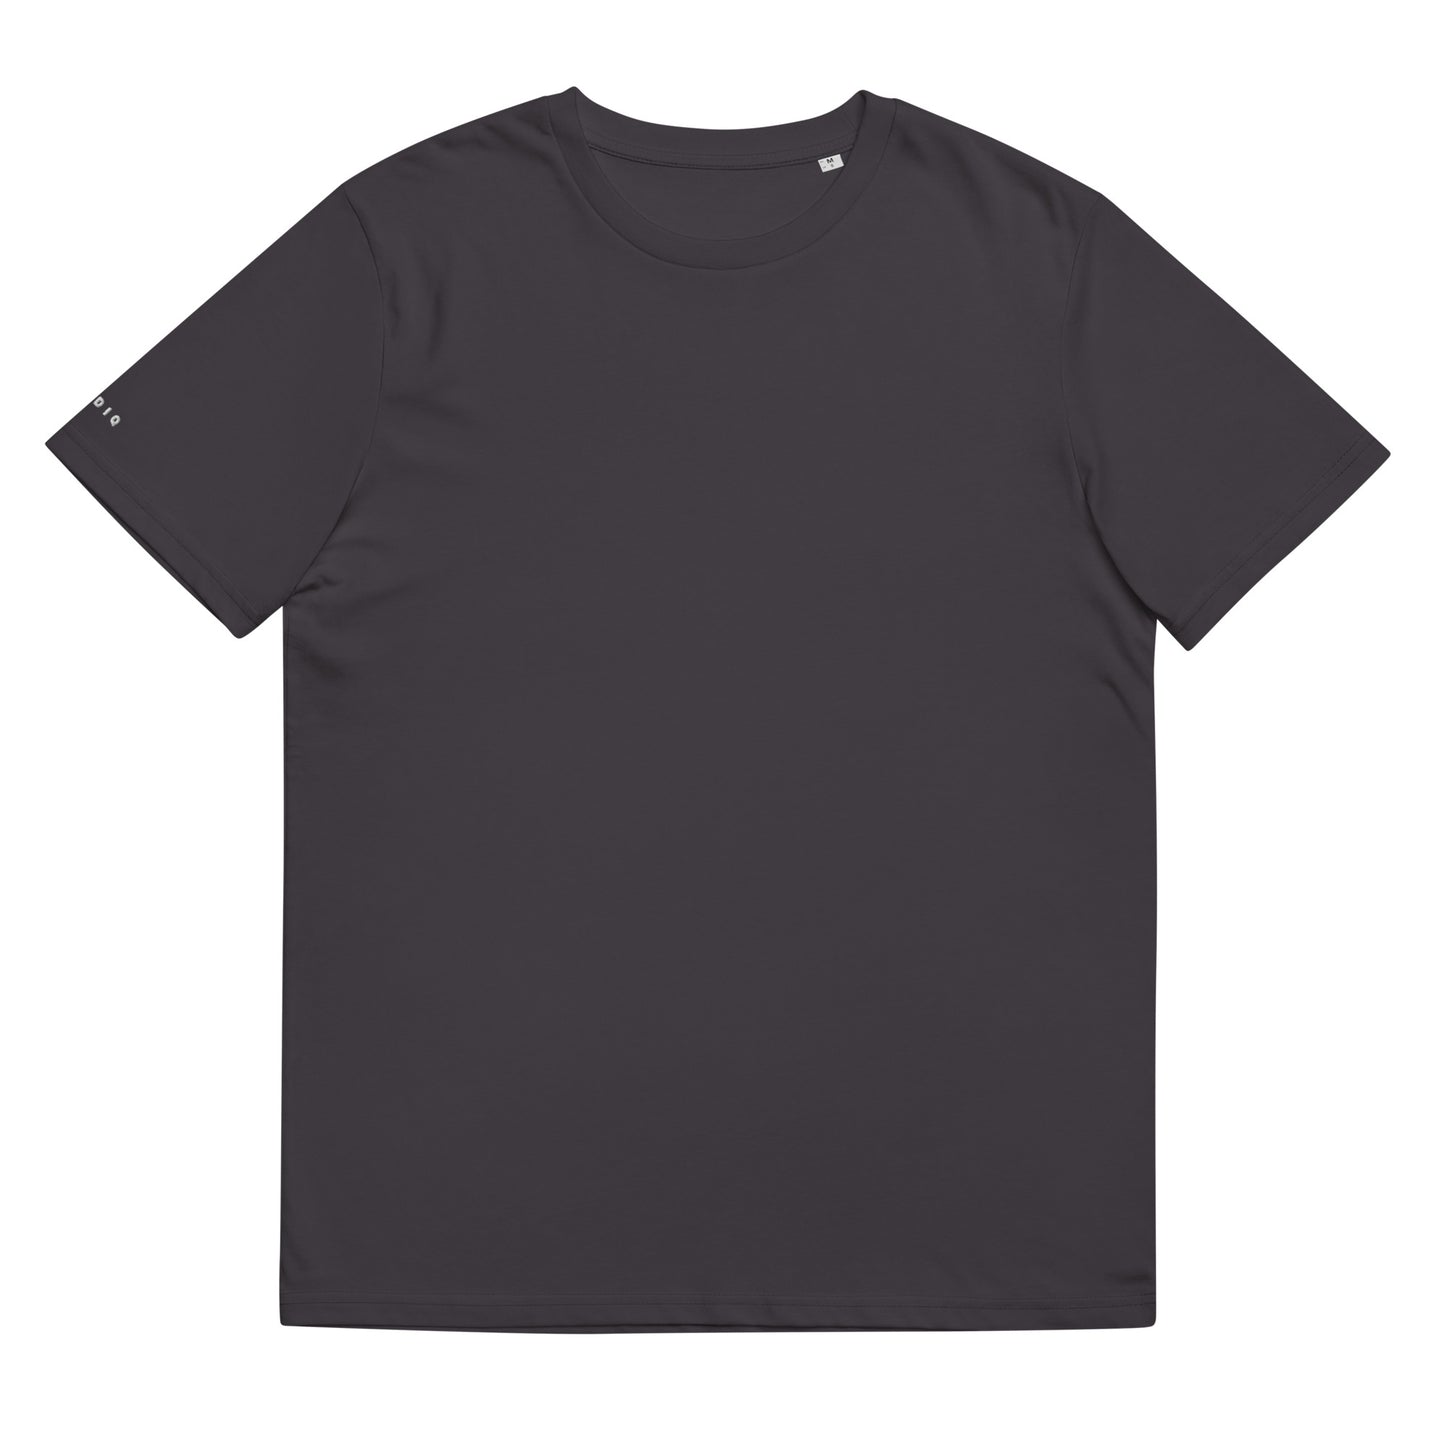 Klediq T-shirt / Anthracite